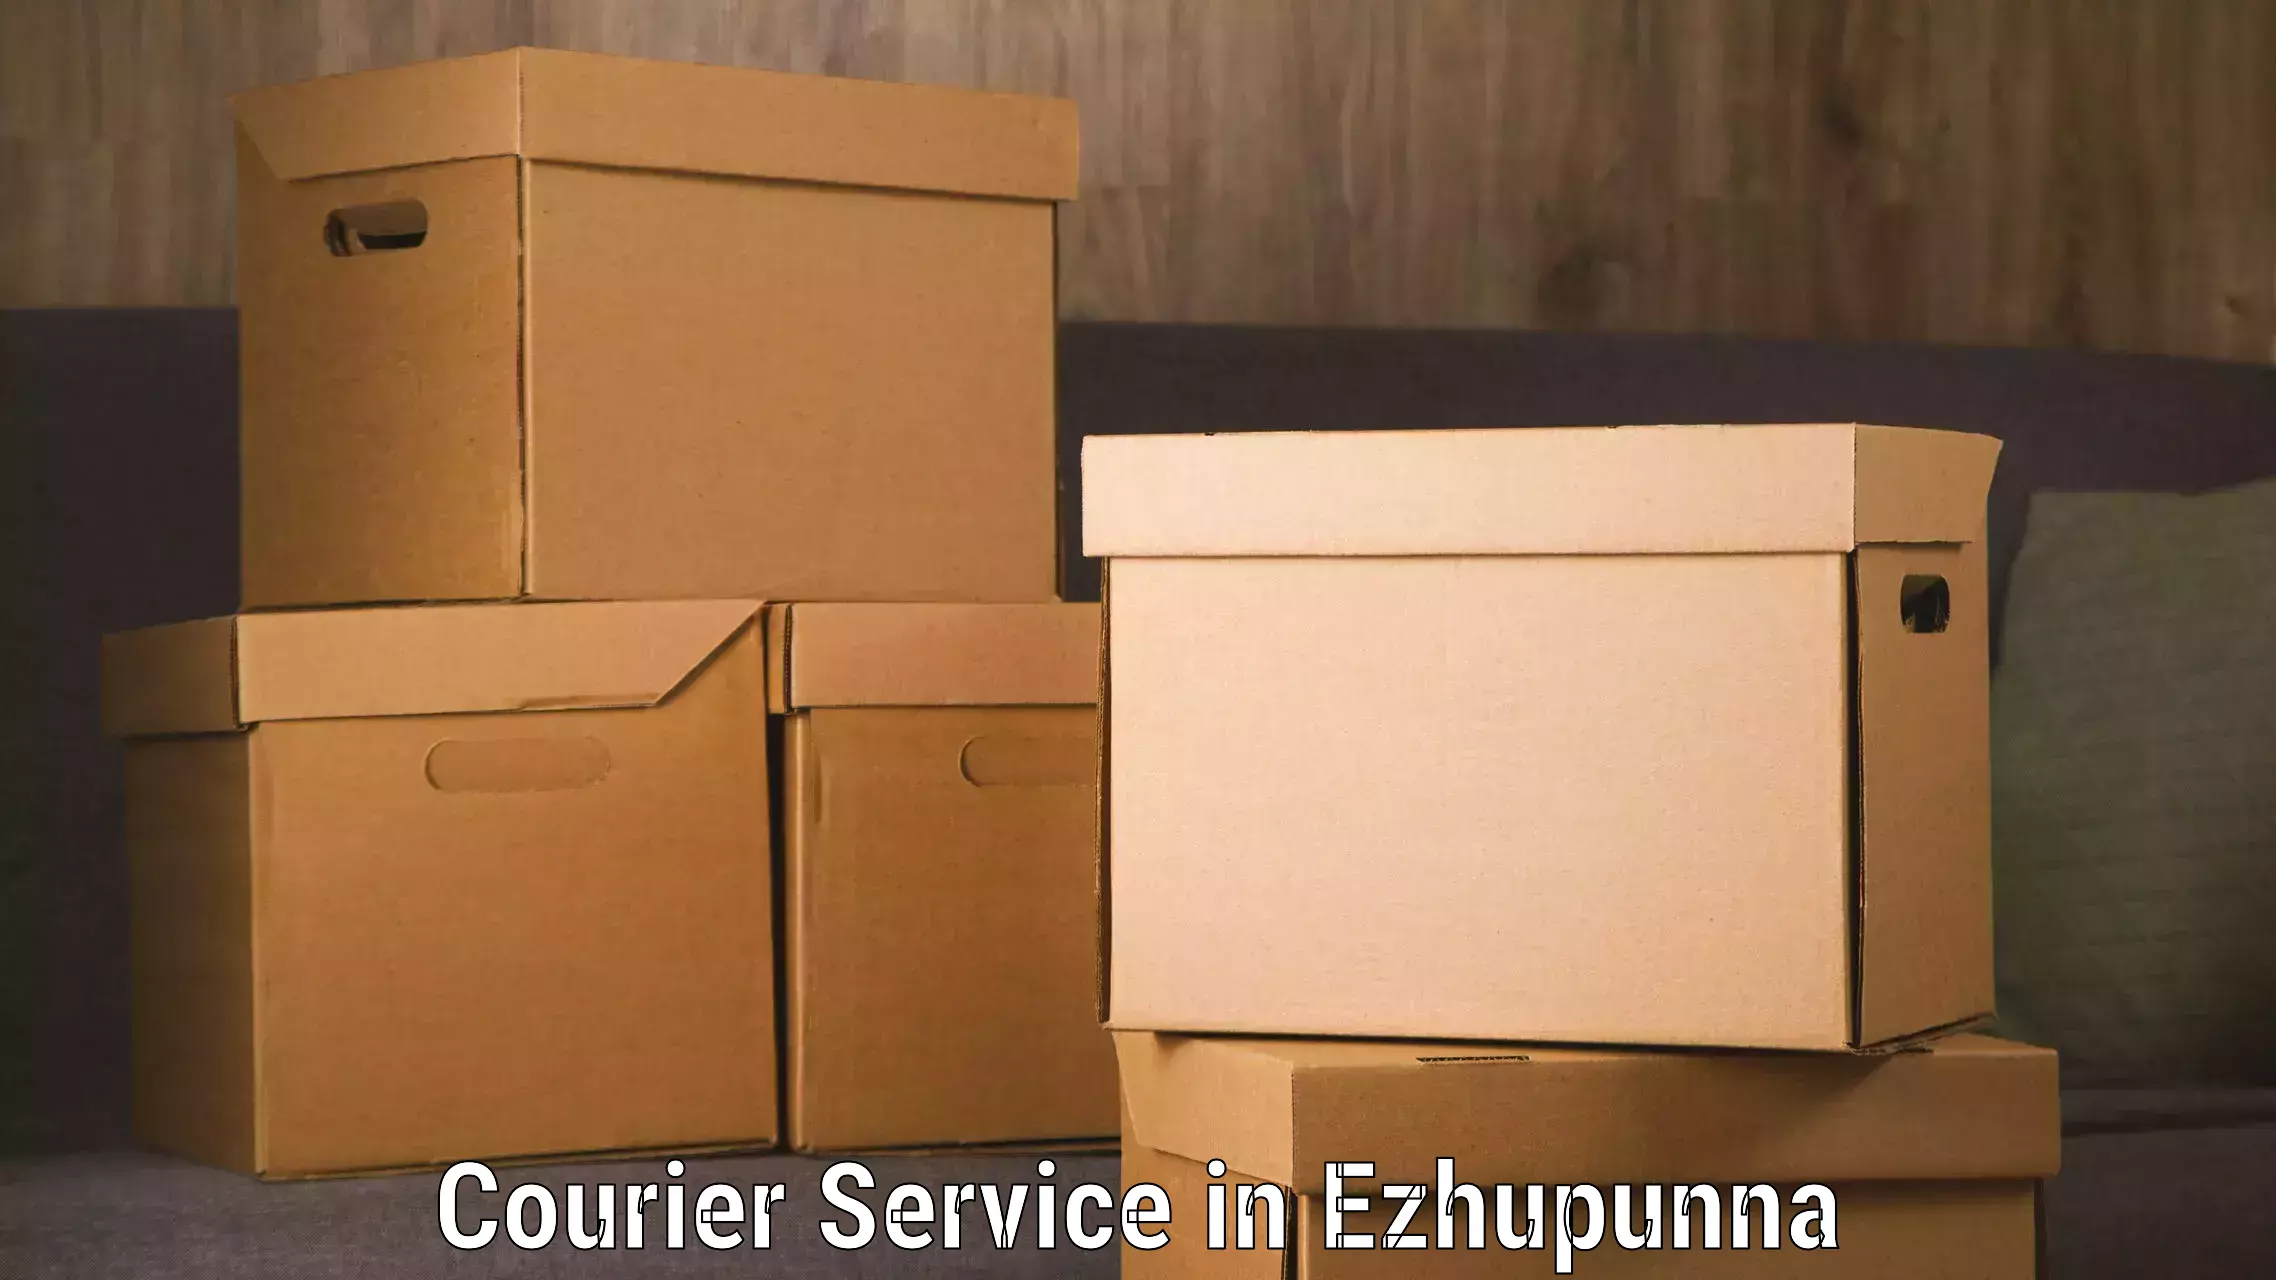 Efficient cargo handling in Ezhupunna